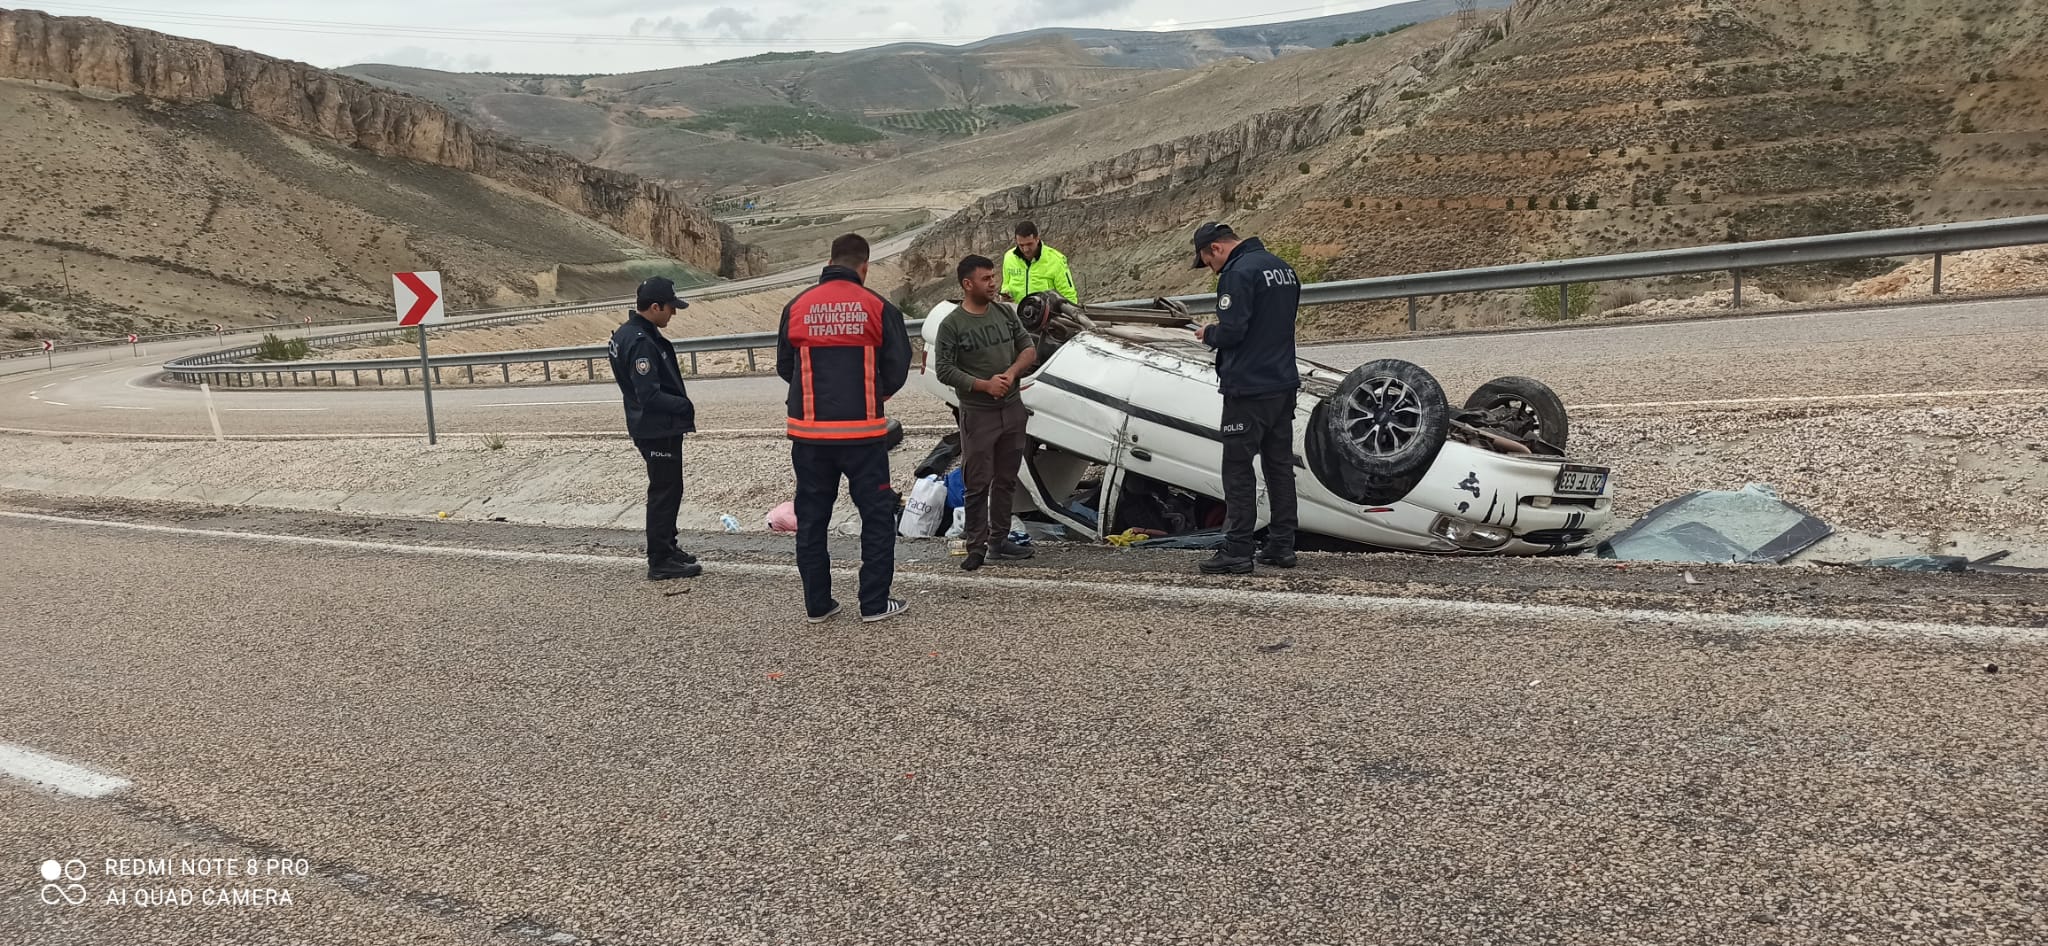 Malatya’nın Darende ilçesinde takla atarak refüjde ters dönen otomobilde bulunan 4 kişi yaralandı.